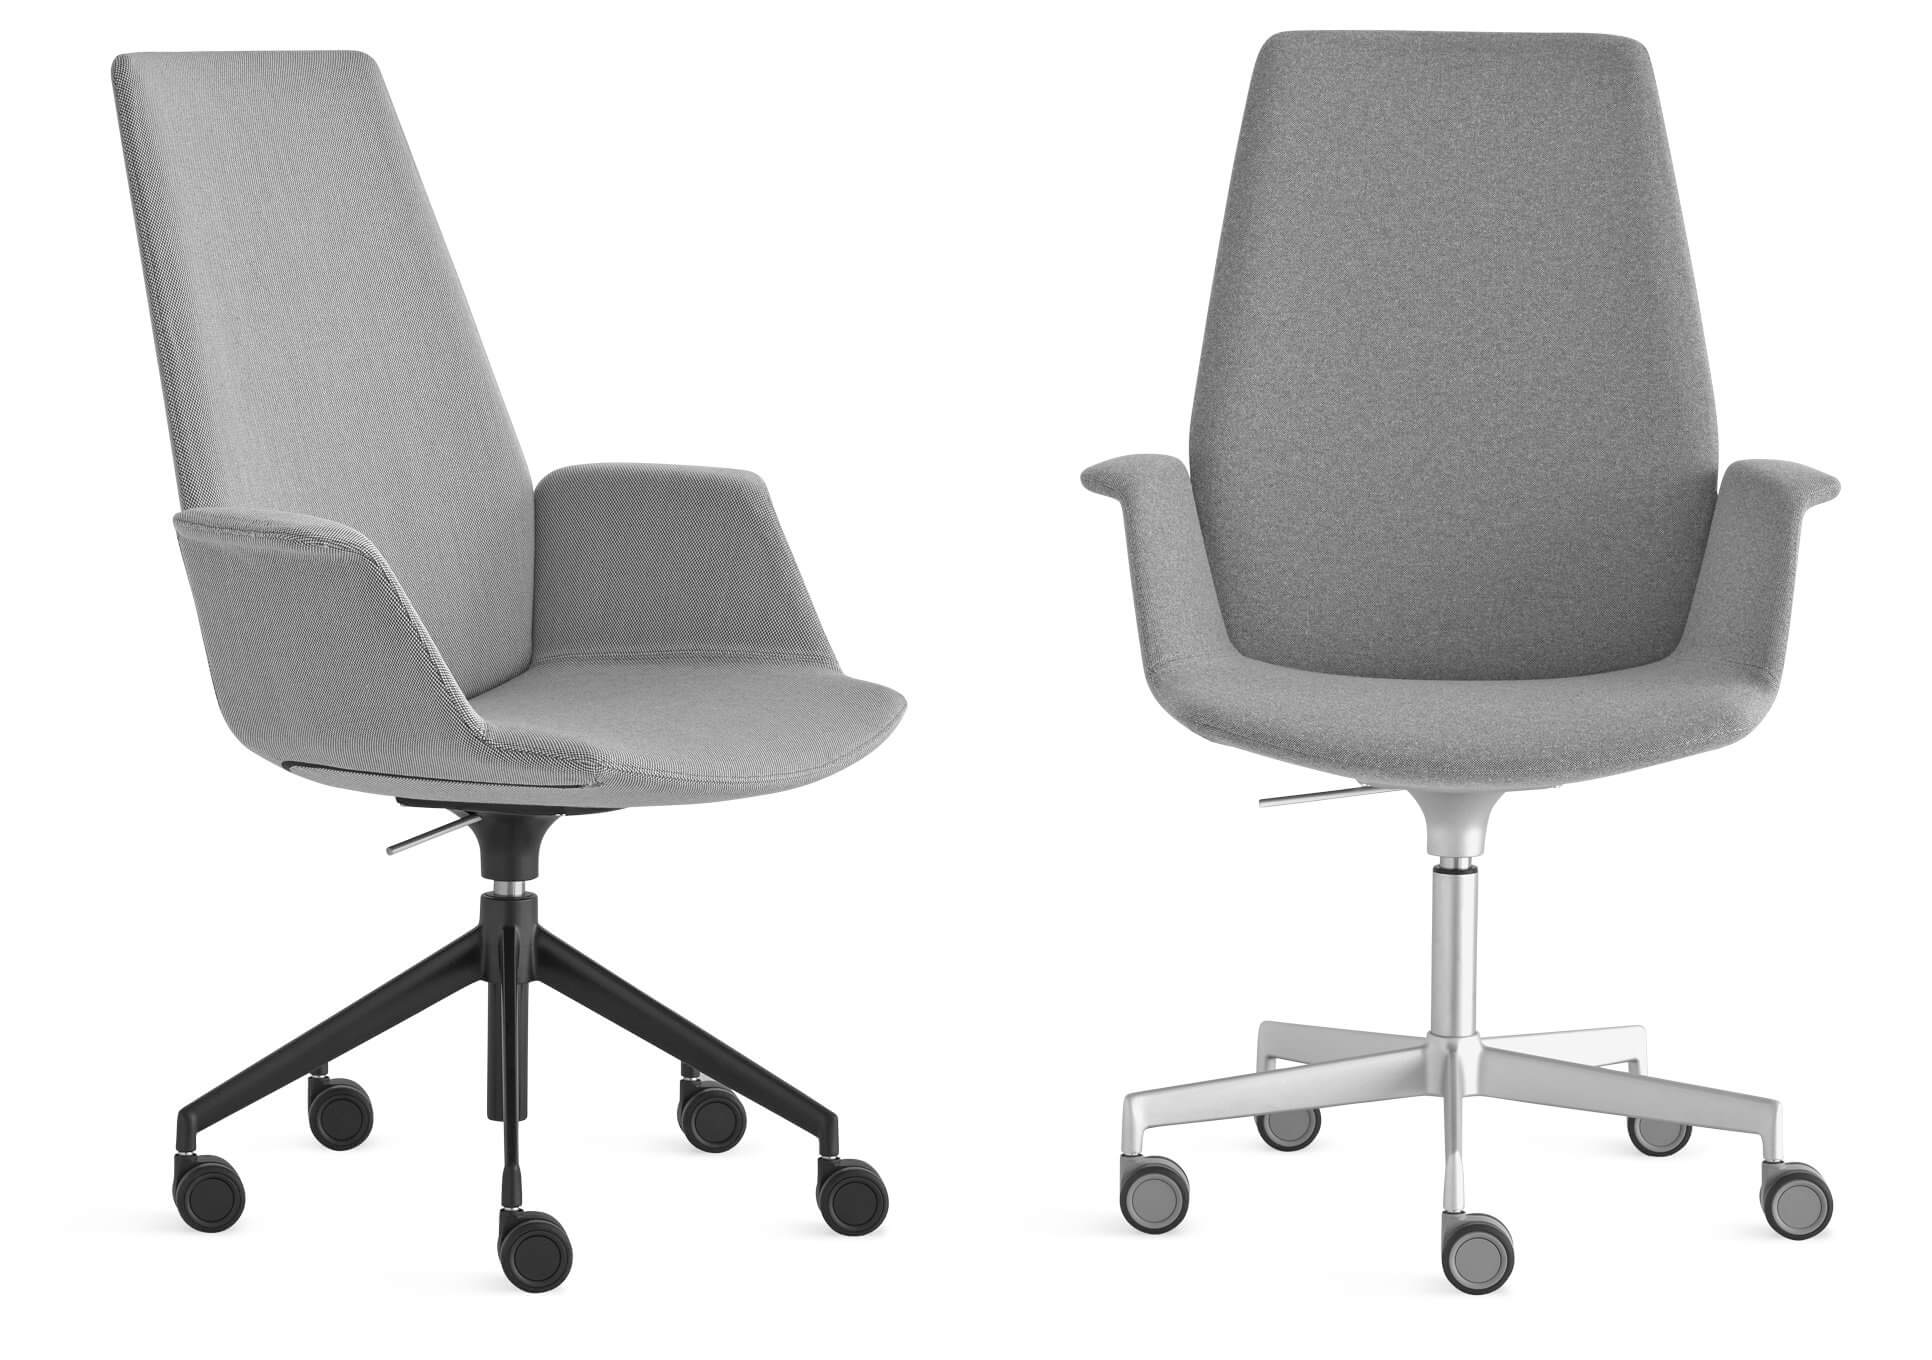 Le fauteuil de bureau design UNO pour les espaces professionnels